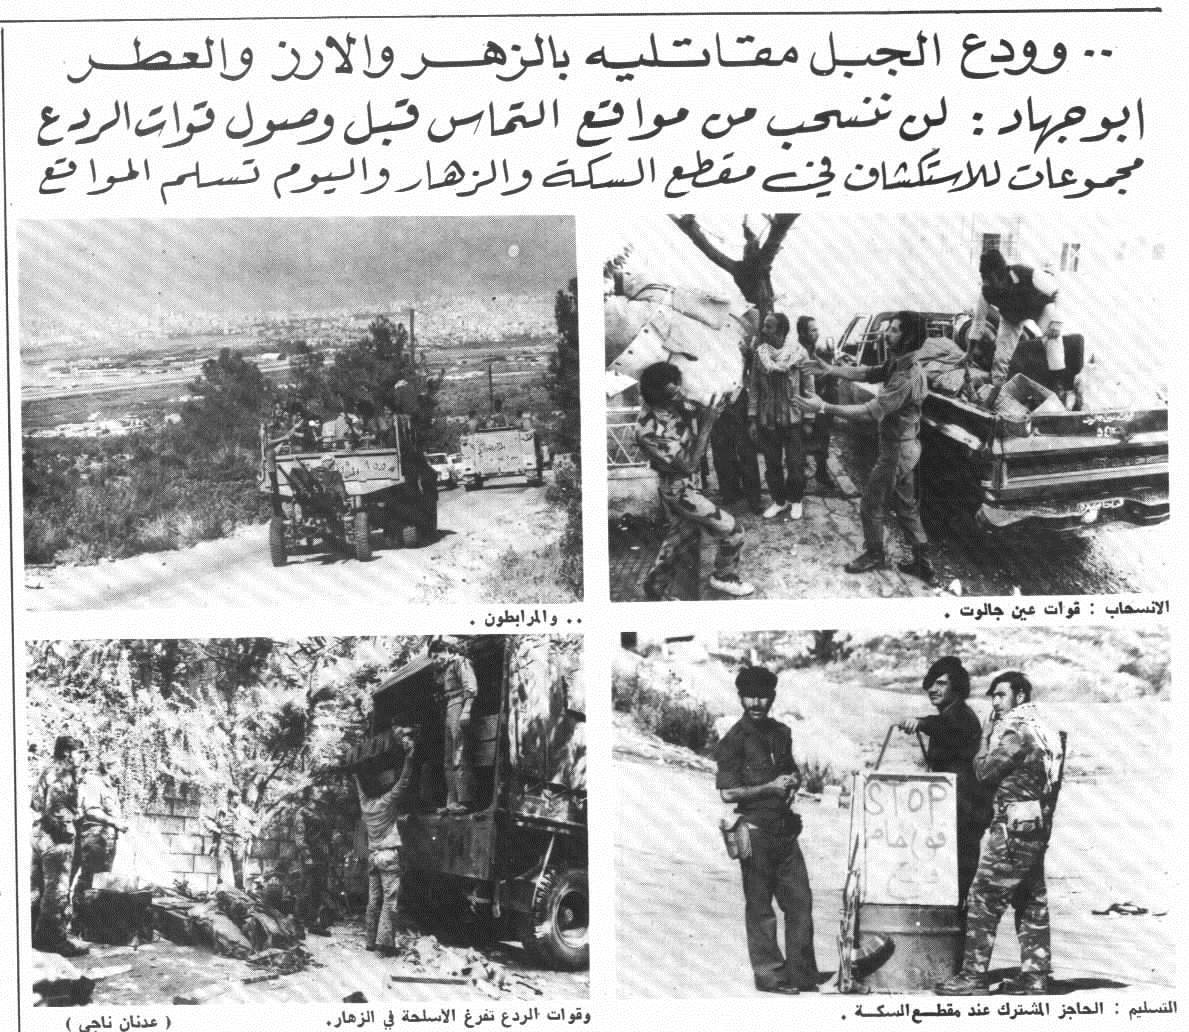 الحرب الاهليه اللبنانيه ........ابرز المحطات وصور نادره  10+Nov+76